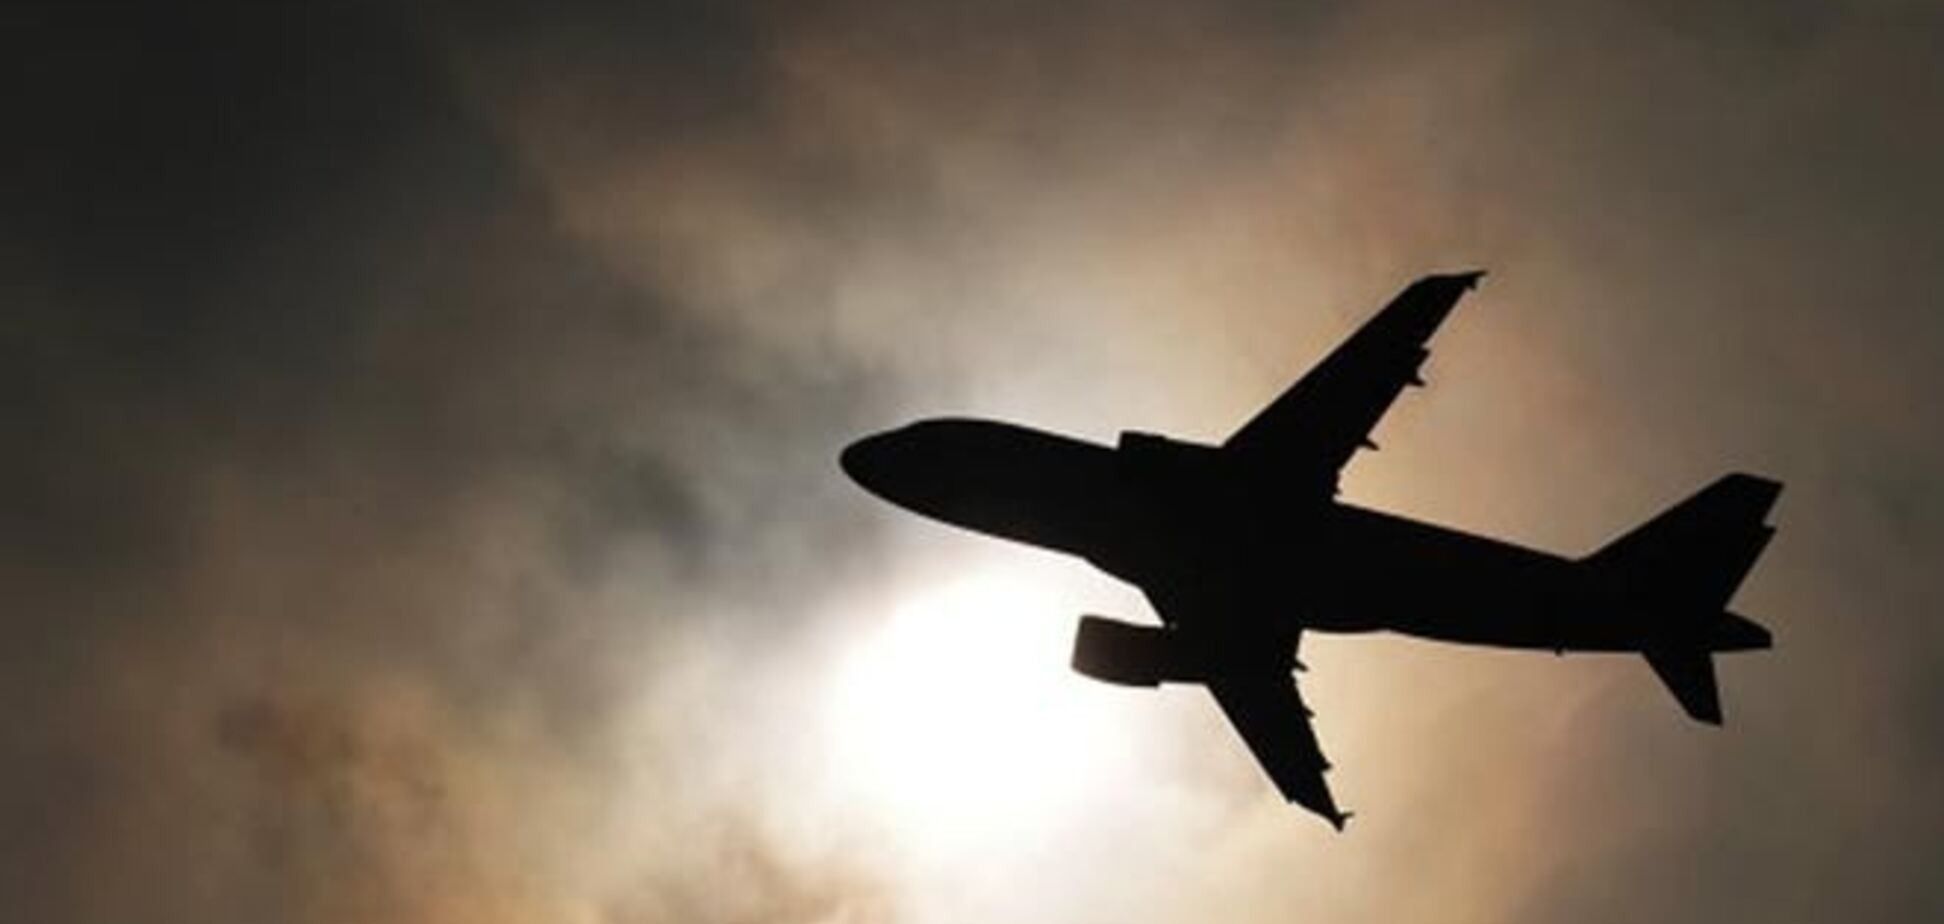 СМИ: захватчики самолета в Женеве потребовали политубежища